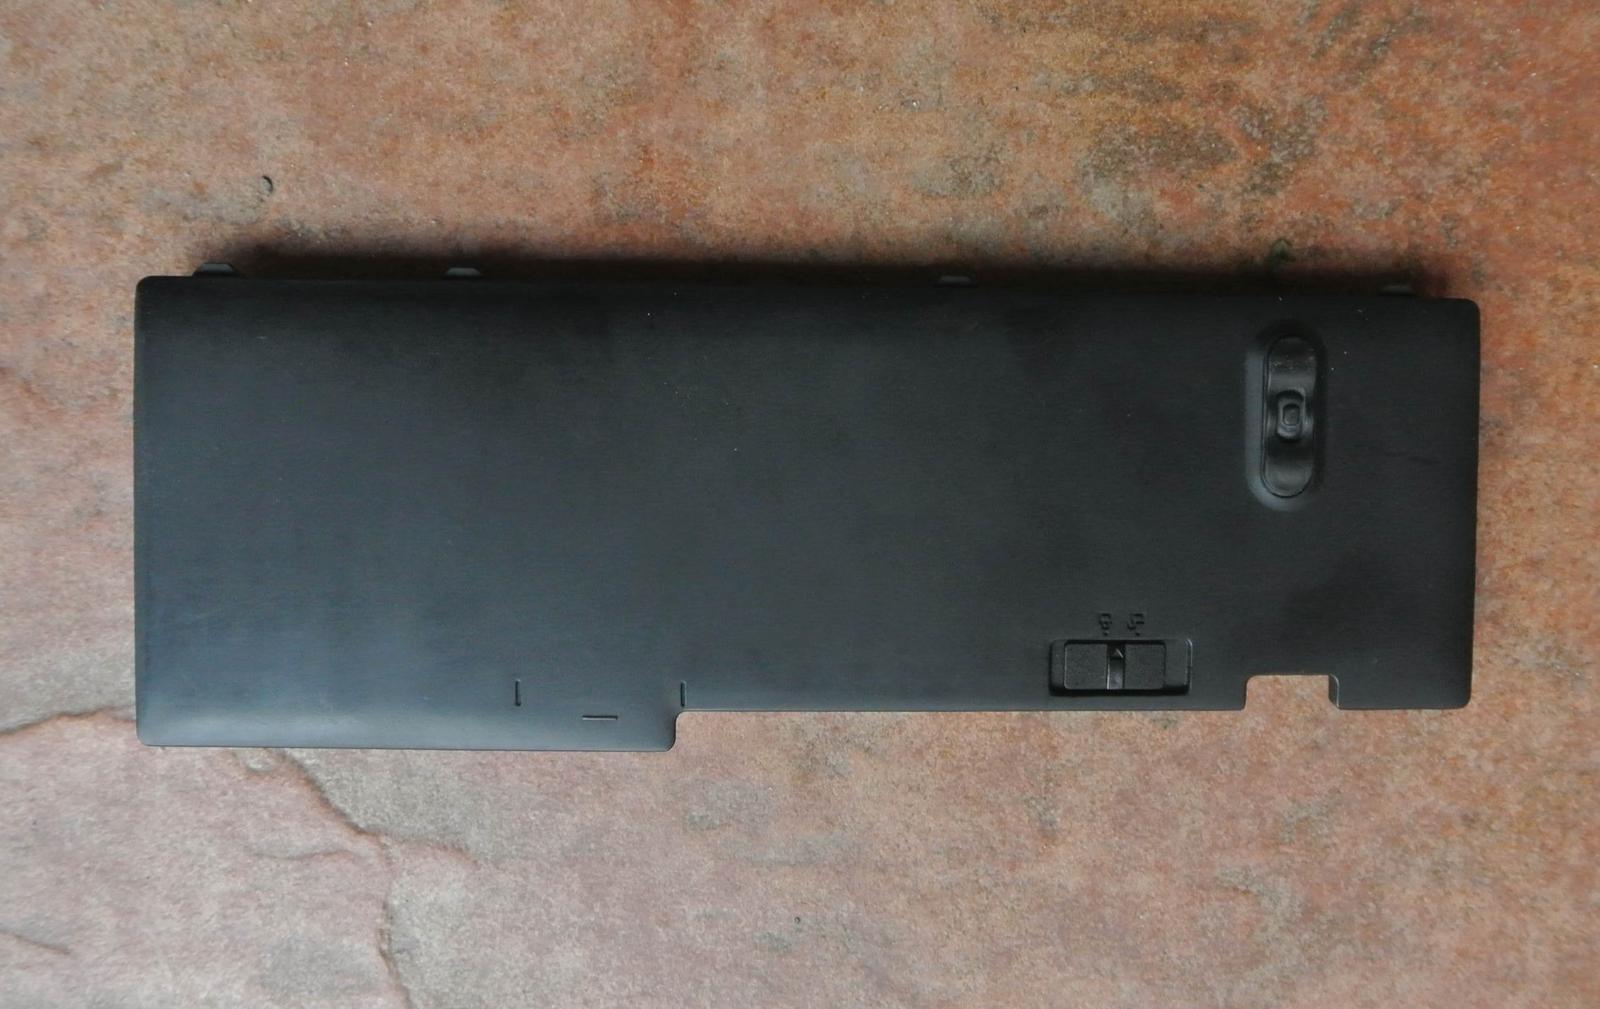 Originál baterie 42T4845 pro Lenovo ThinkPad T420s / T430s - Notebooky, příslušenství